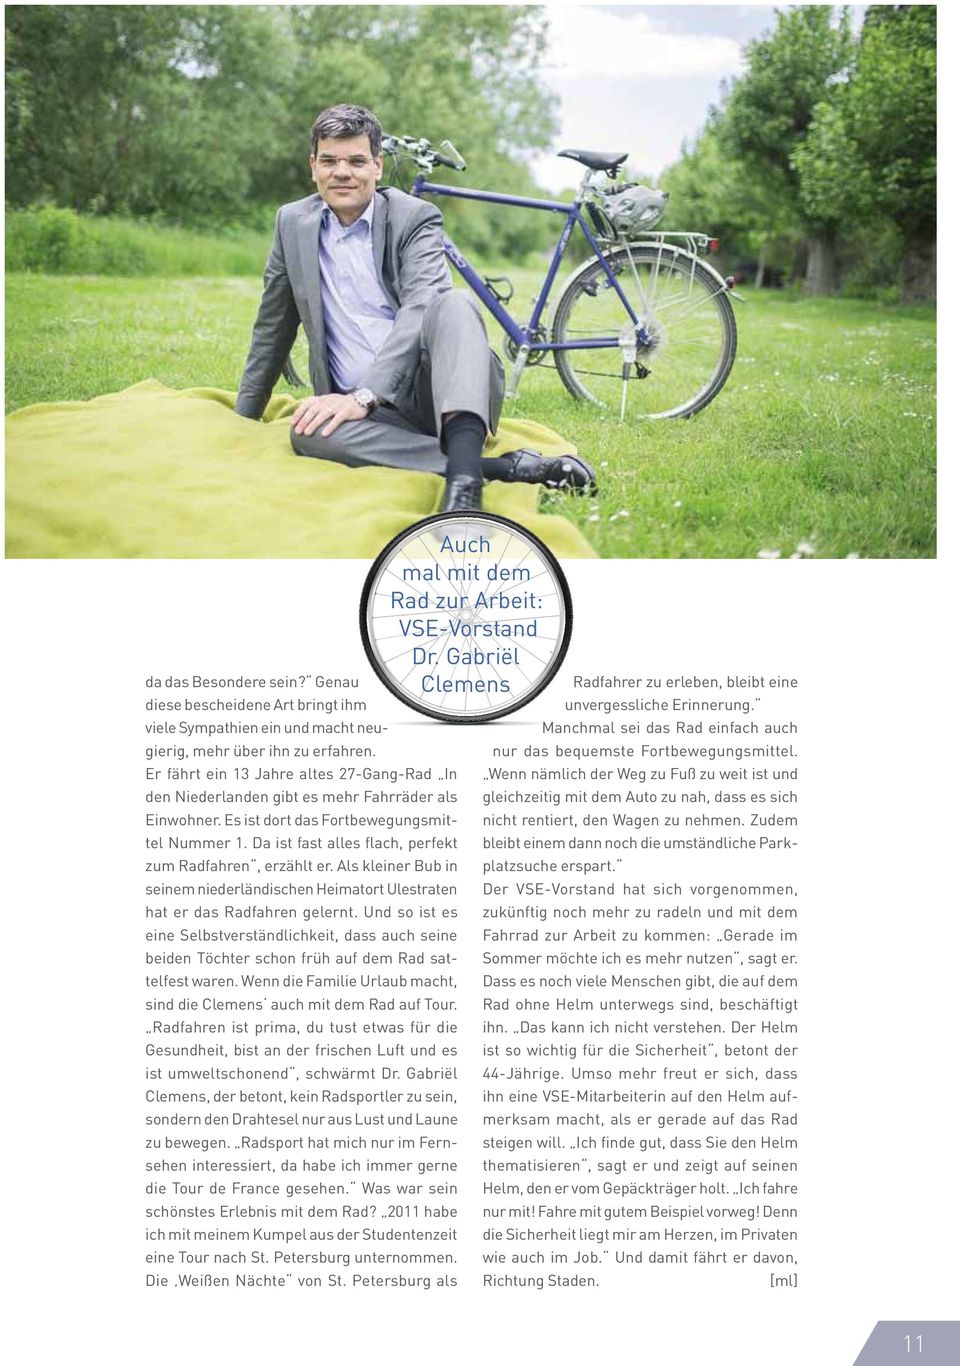 Da ist fast alles flach, perfekt zum Radfahren, erzählt er. Als kleiner Bub in seinem niederländischen Heimatort Ulestraten hat er das Radfahren gelernt.